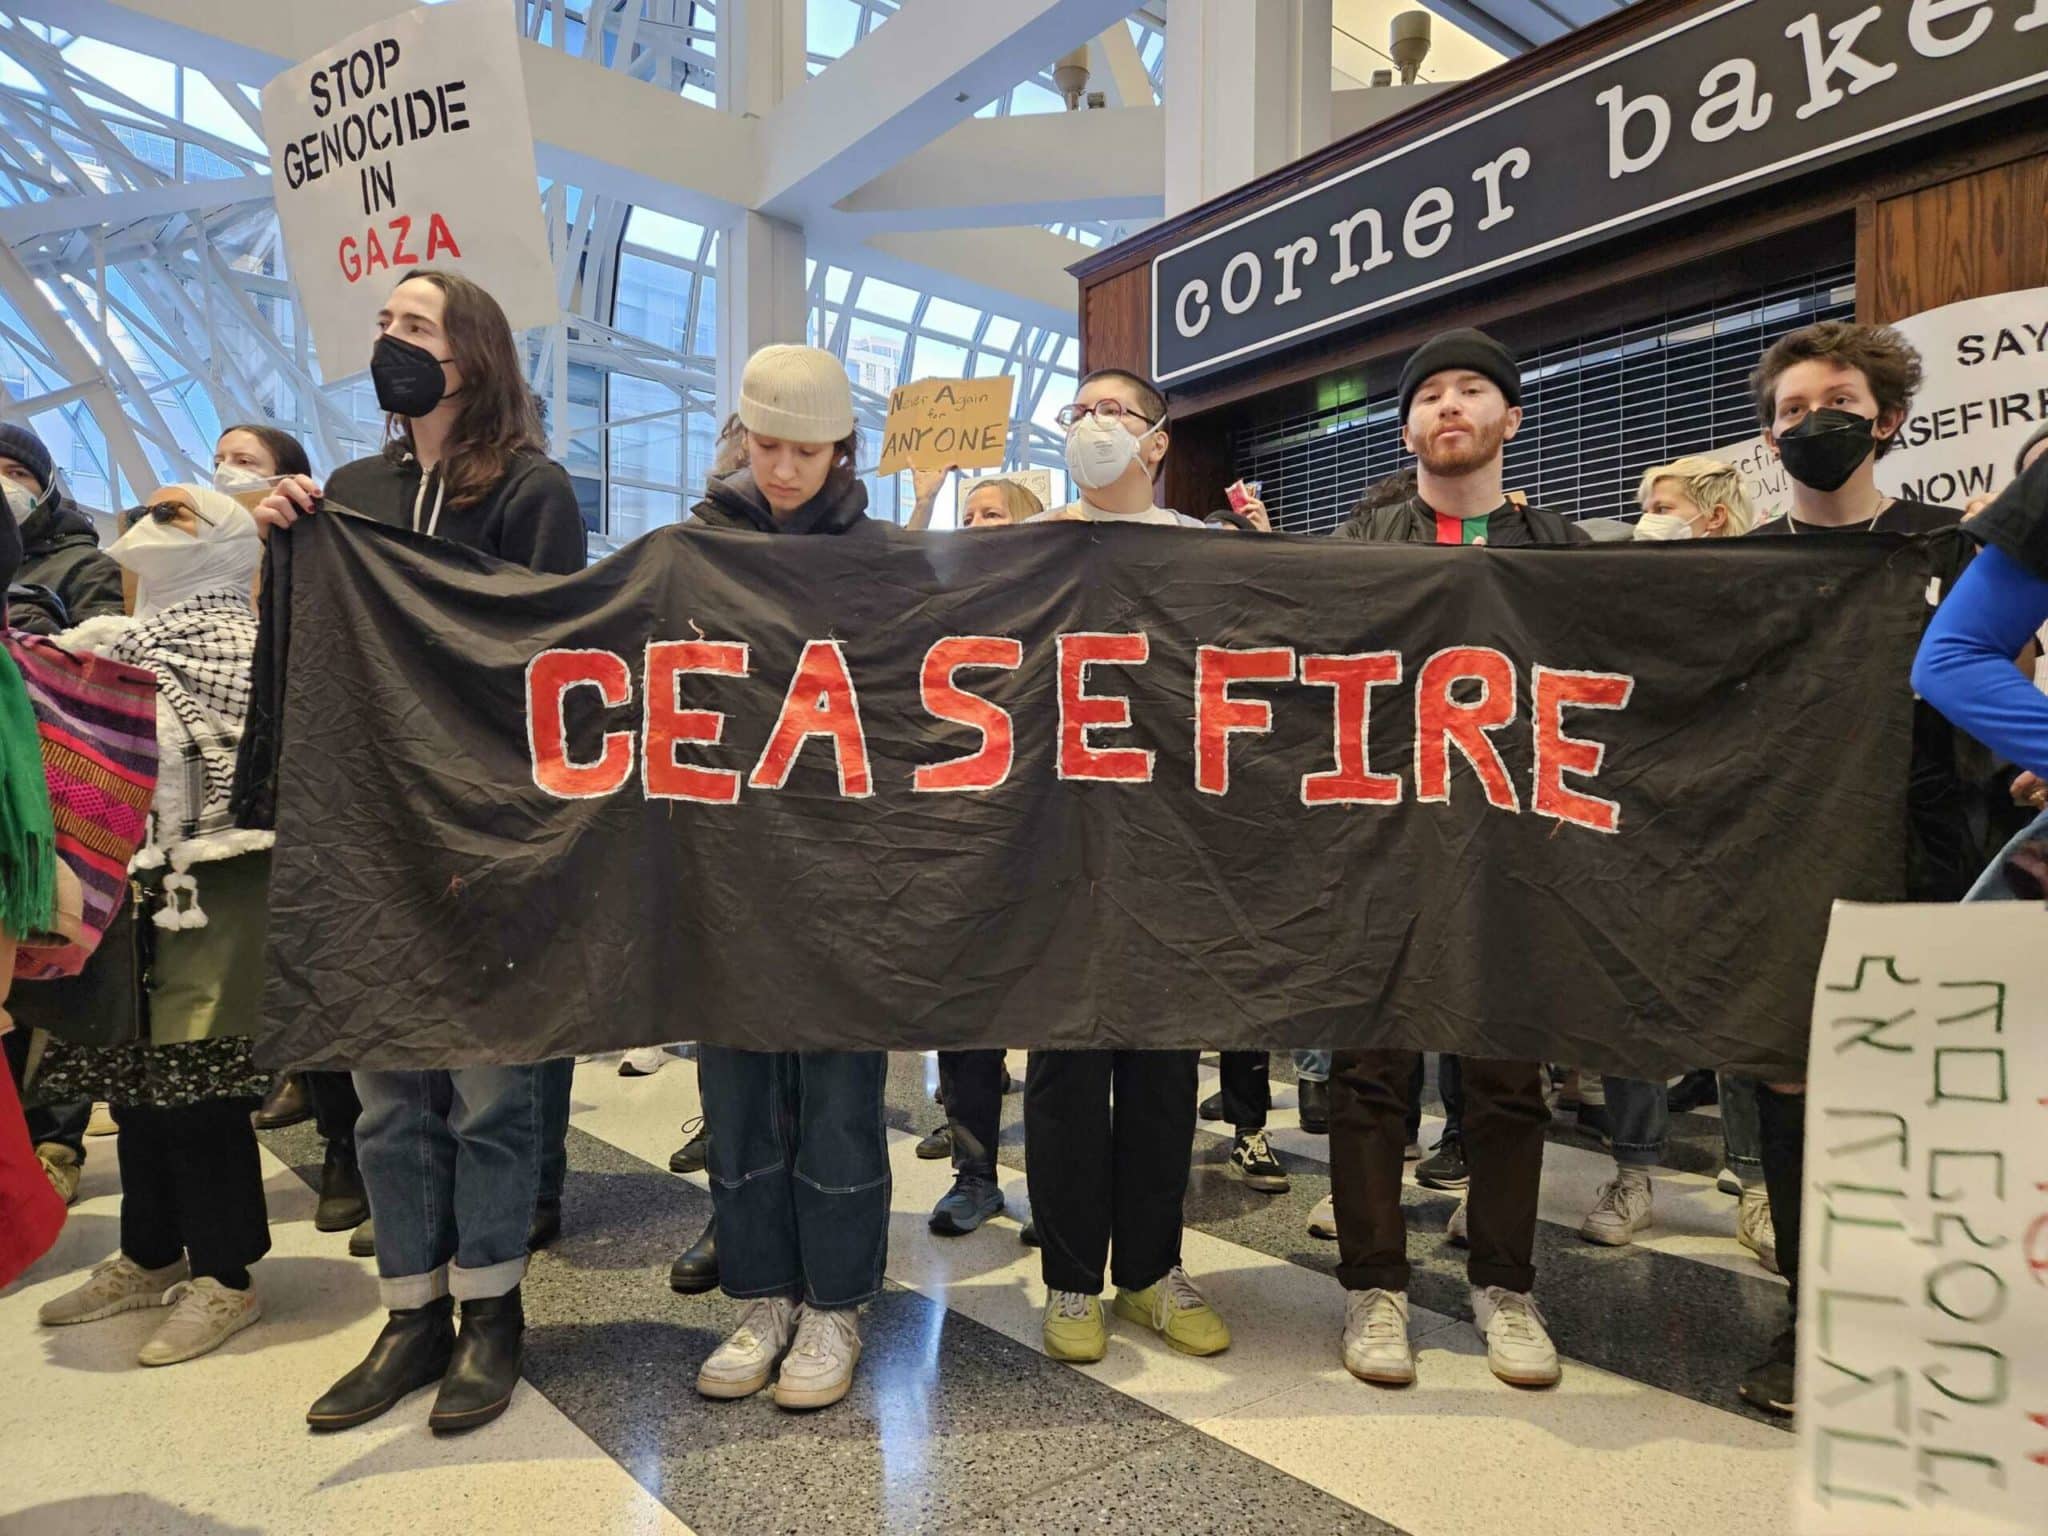 Plus de 1 000 manifestants ont fermé la gare de Chicago pour exiger le cessez-le-feu